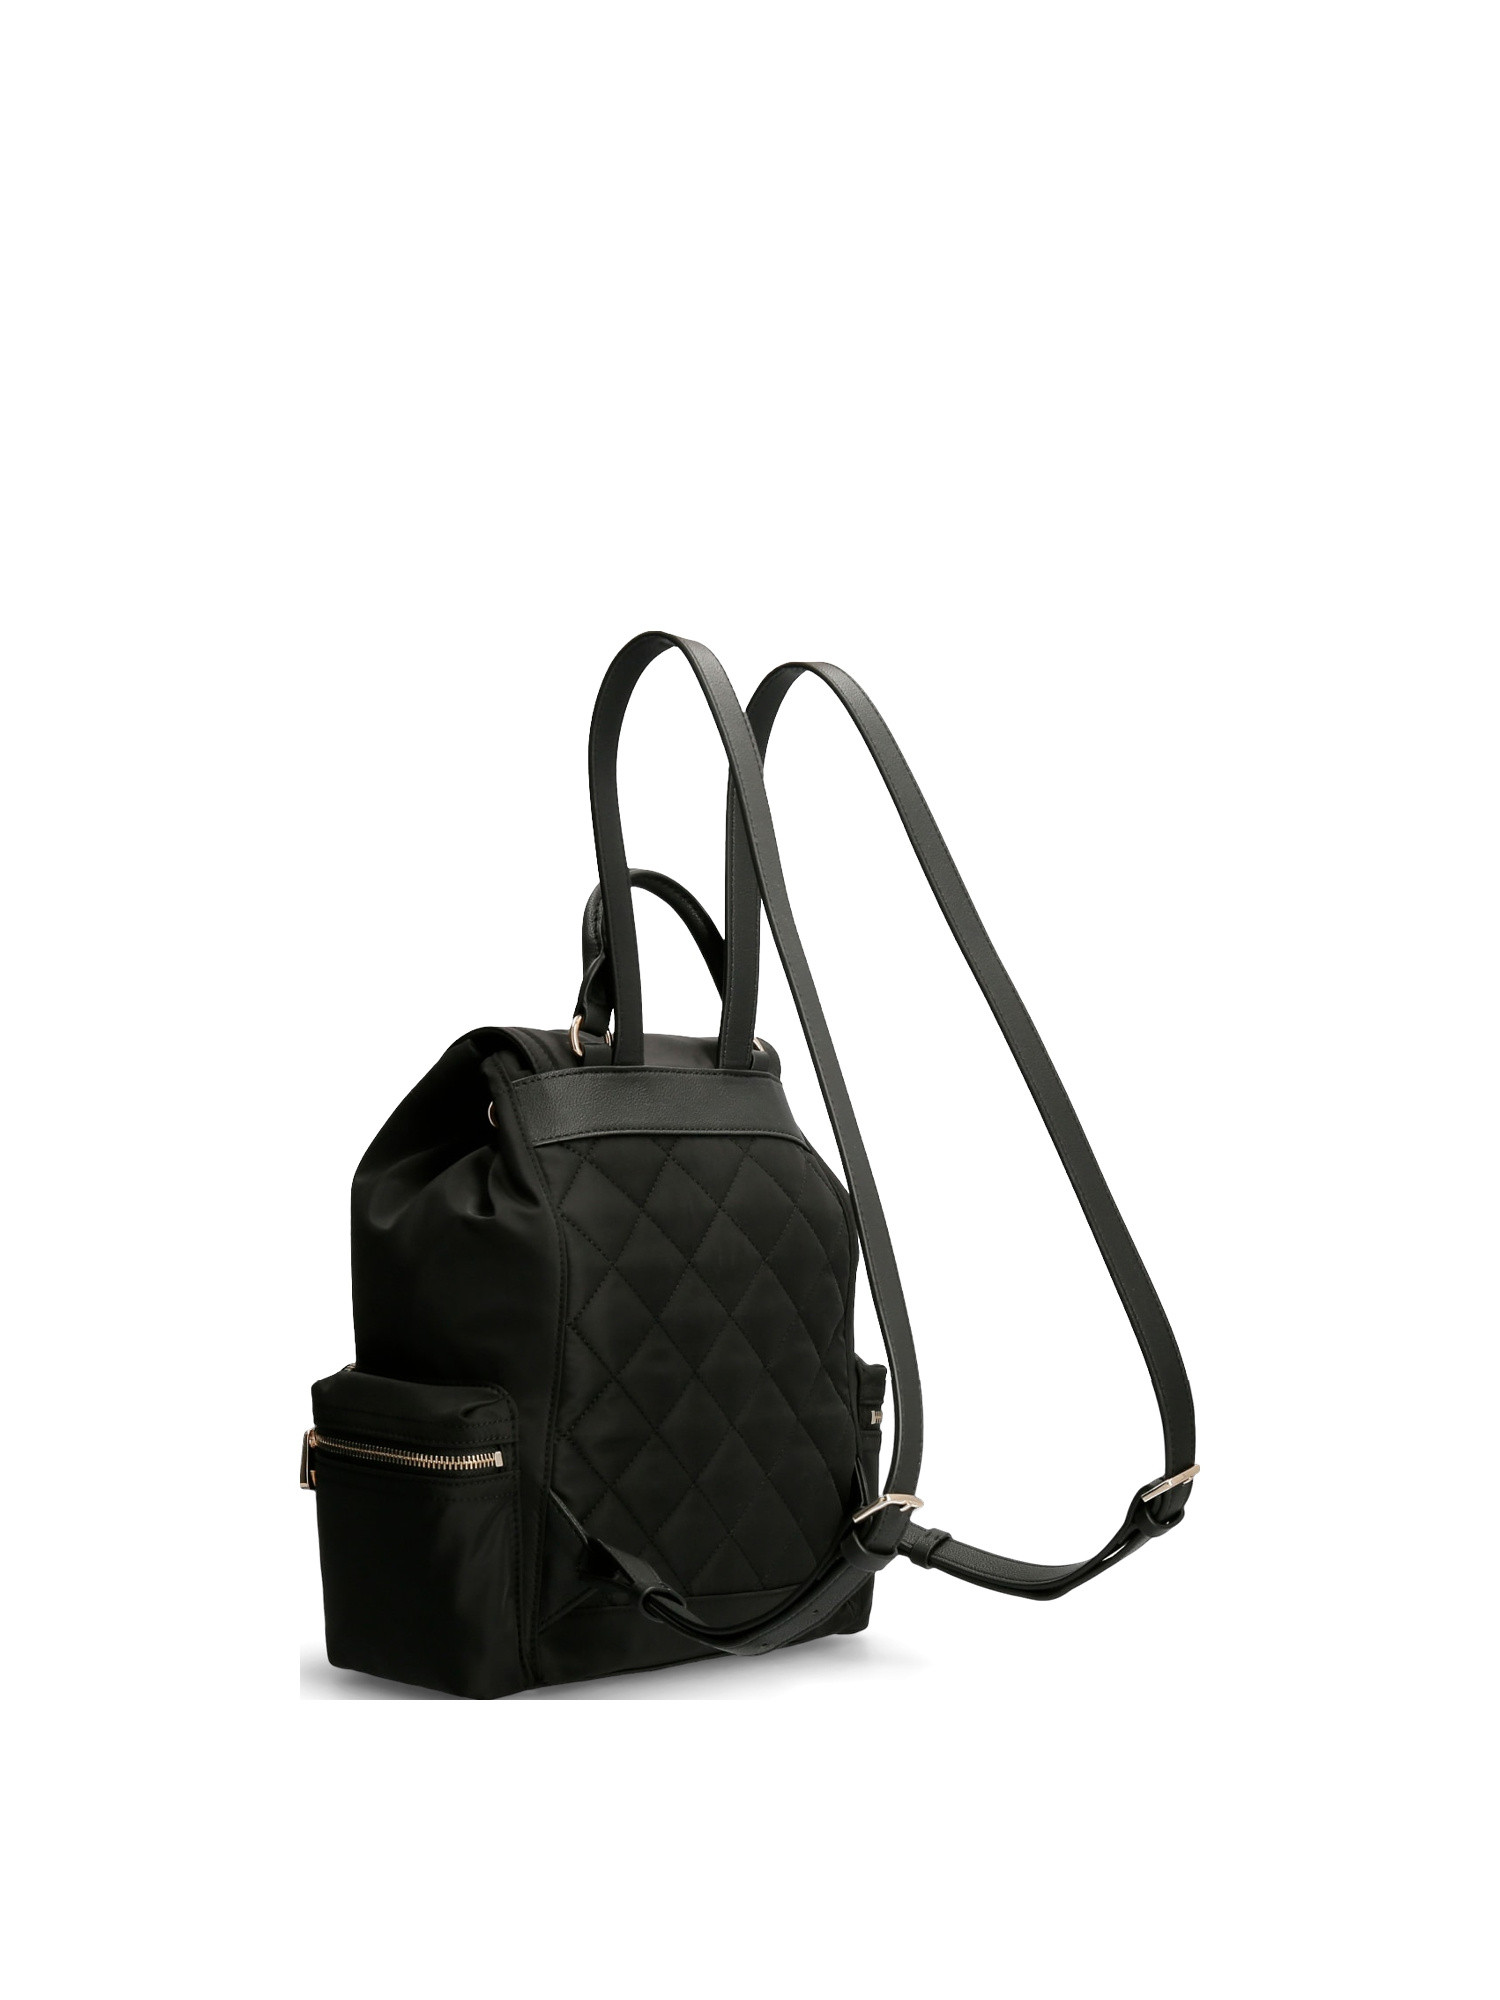 Guess - Gem eco backpack, Black, large image number 1